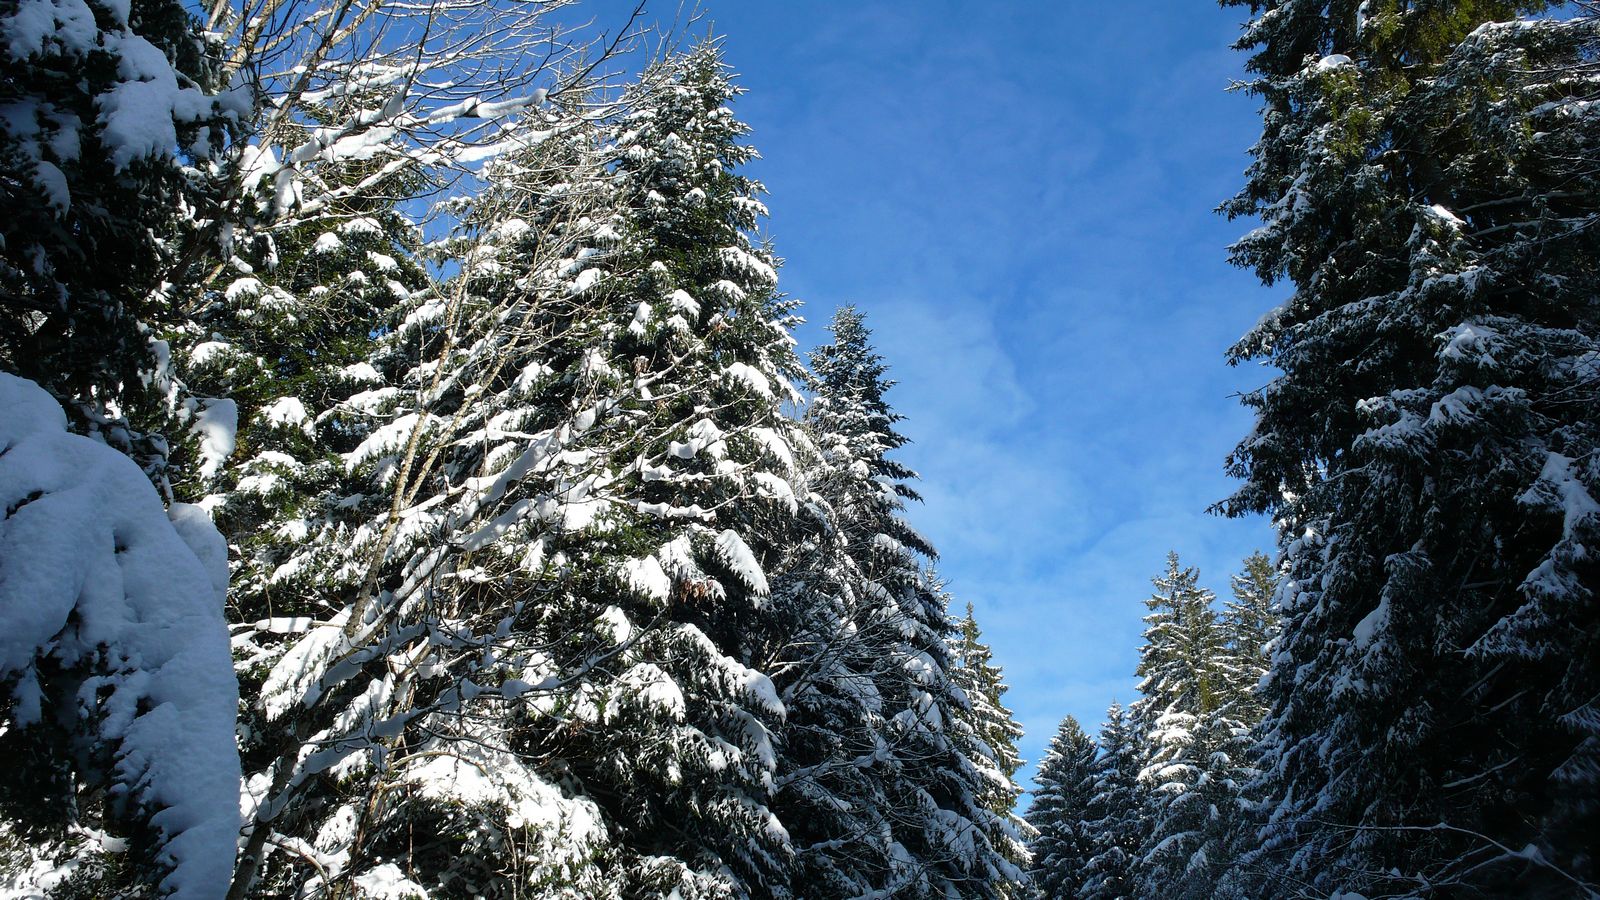 Les cimes des sapins en hiver - Photo Claude Schneider - Copyrigth